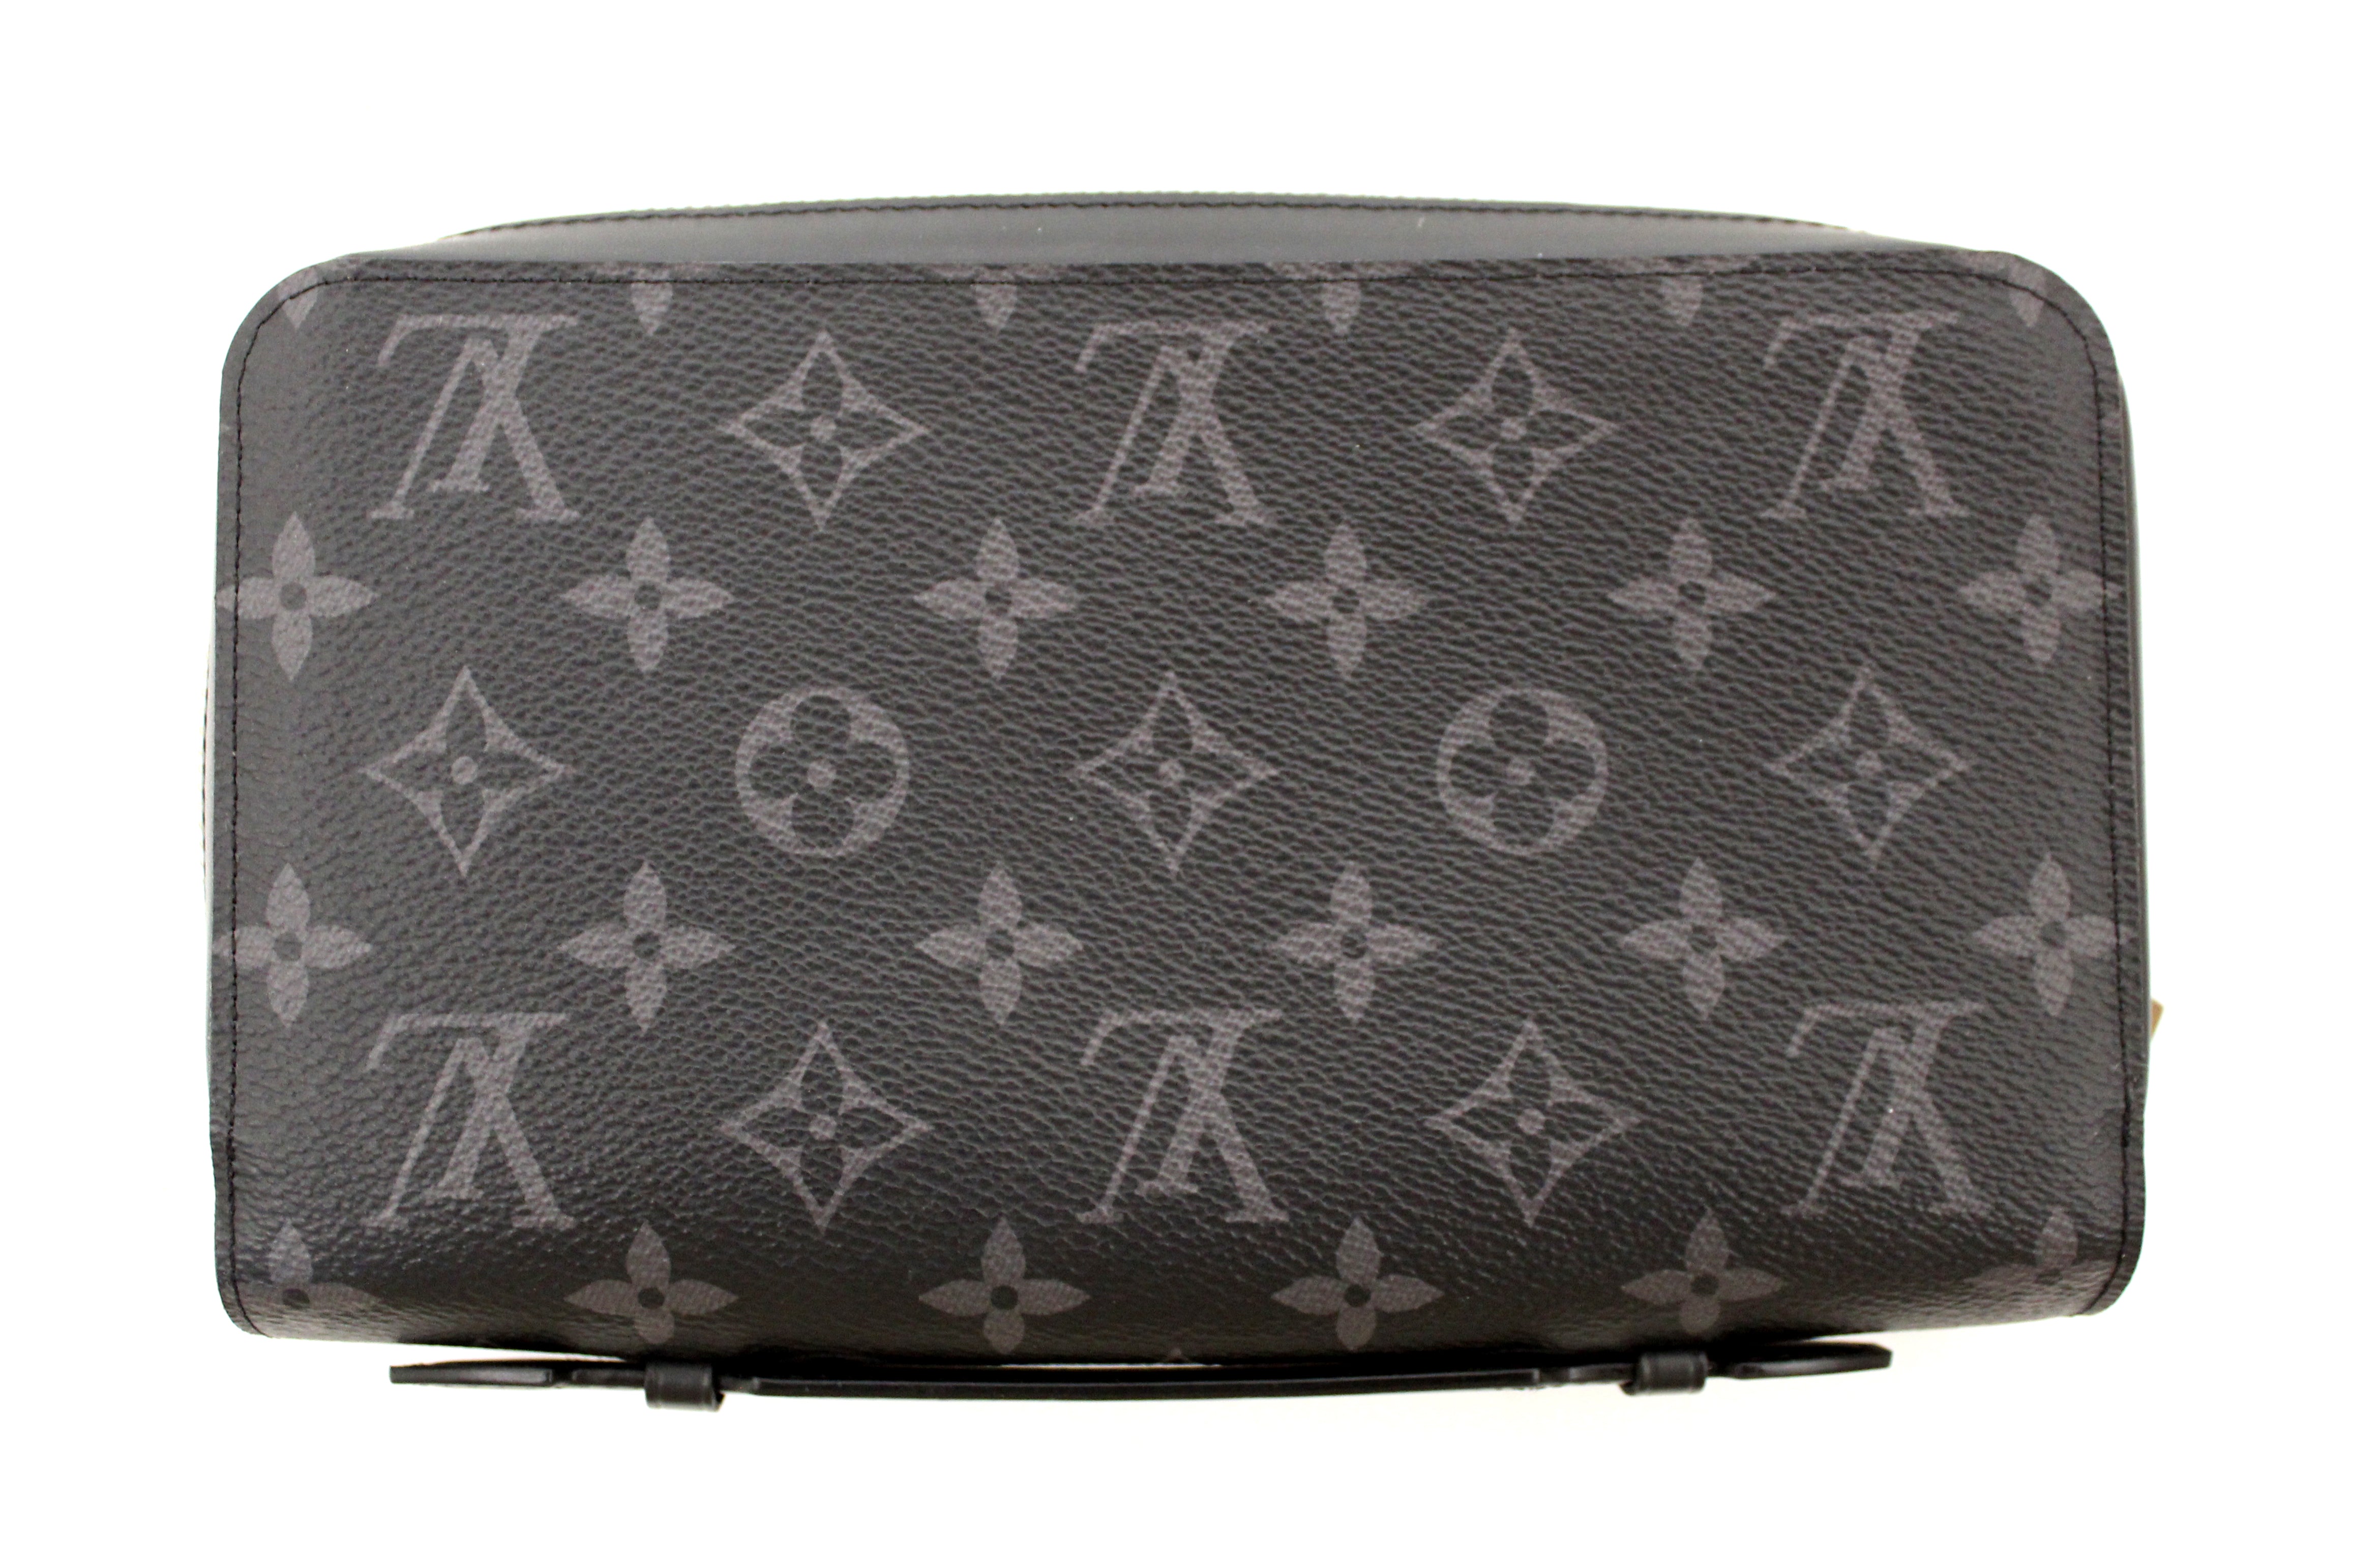 Authentic Louis Vuitton Monogram Eclipse Zippy XL Wallet